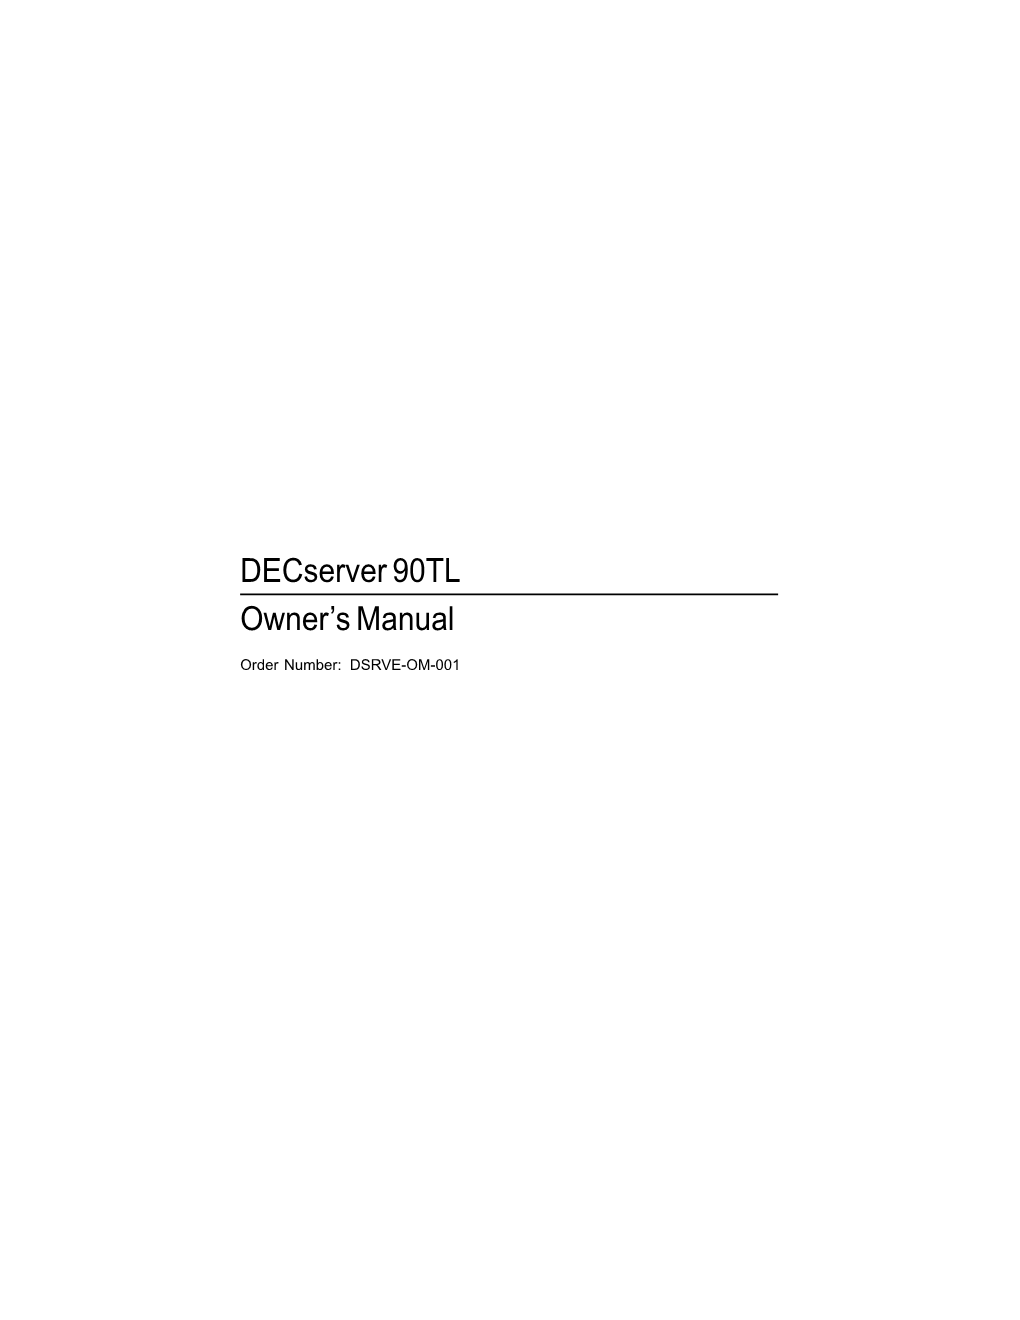 Decserver 90TL Owner's Manual